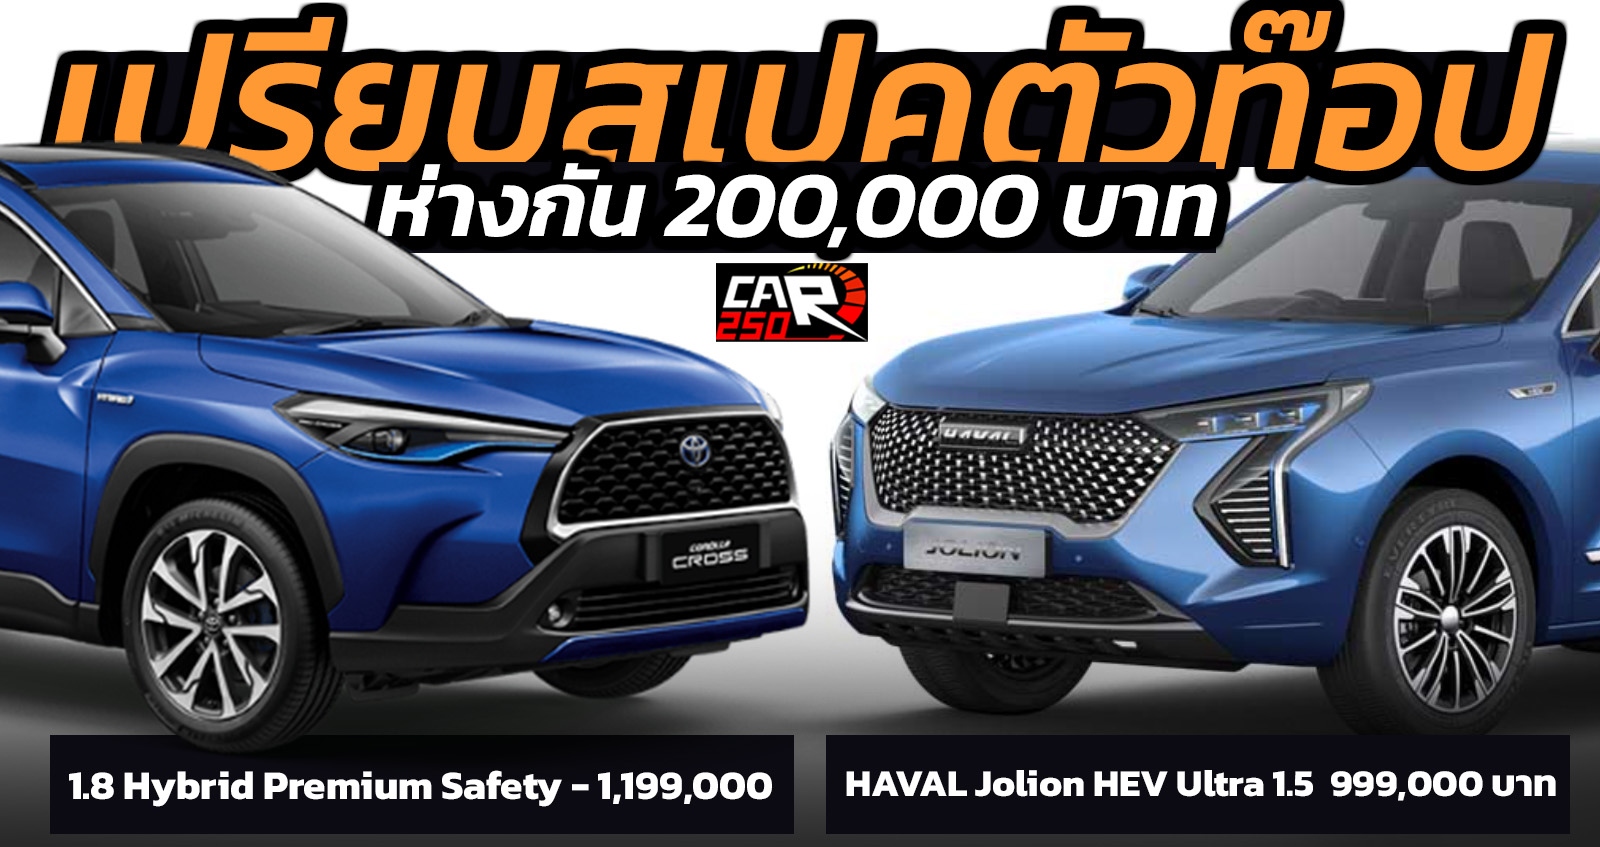 เปรียบตัวท๊อป HAVAL Jolion HEV Vs Toyota Corolla CROSS ห่างกัน 200,000 บาท